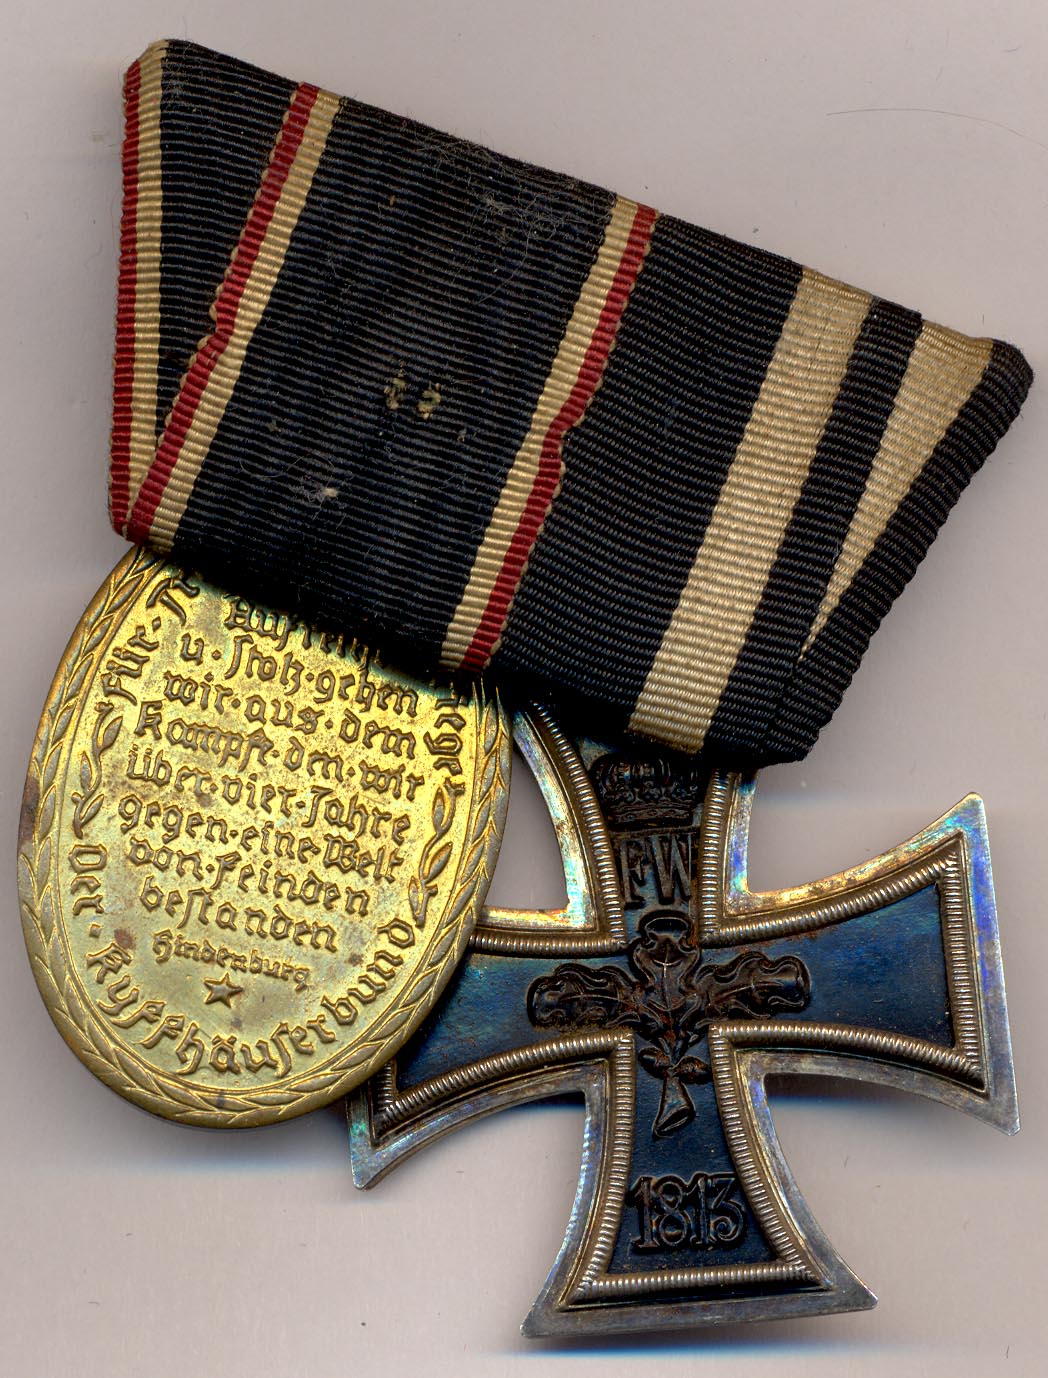 Награждение крестом. Орден "Железный крест 2-Ой степени" 1914 года. Железный крест Пруссия. Наградные кресты. Наградные кресты Германии.